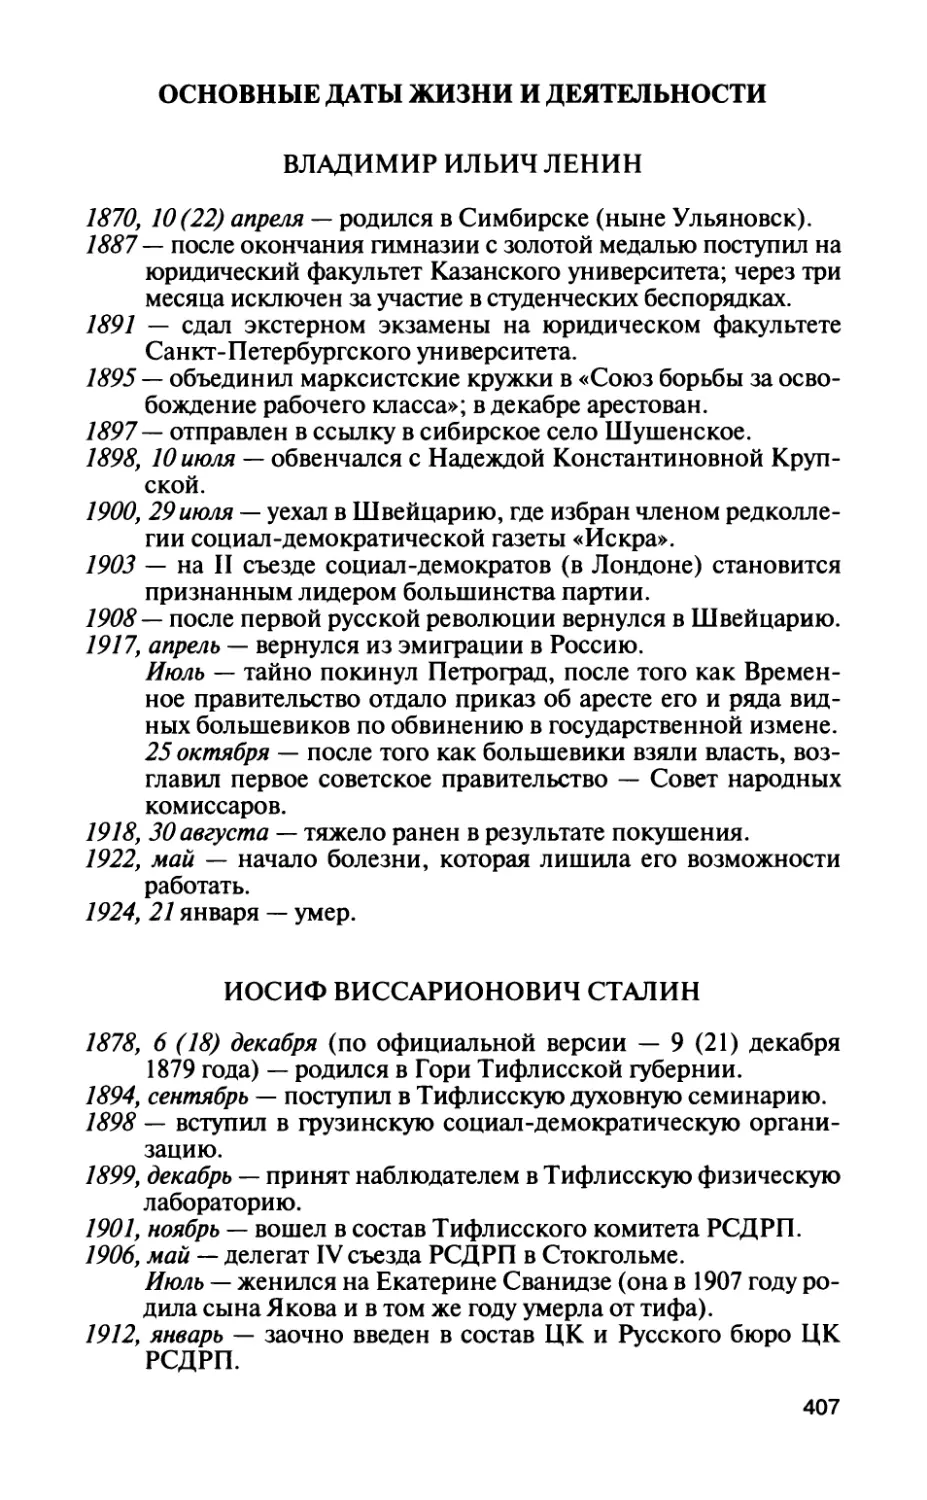 Основные даты жизни и деятельности
Иосиф Виссарионович Сталин